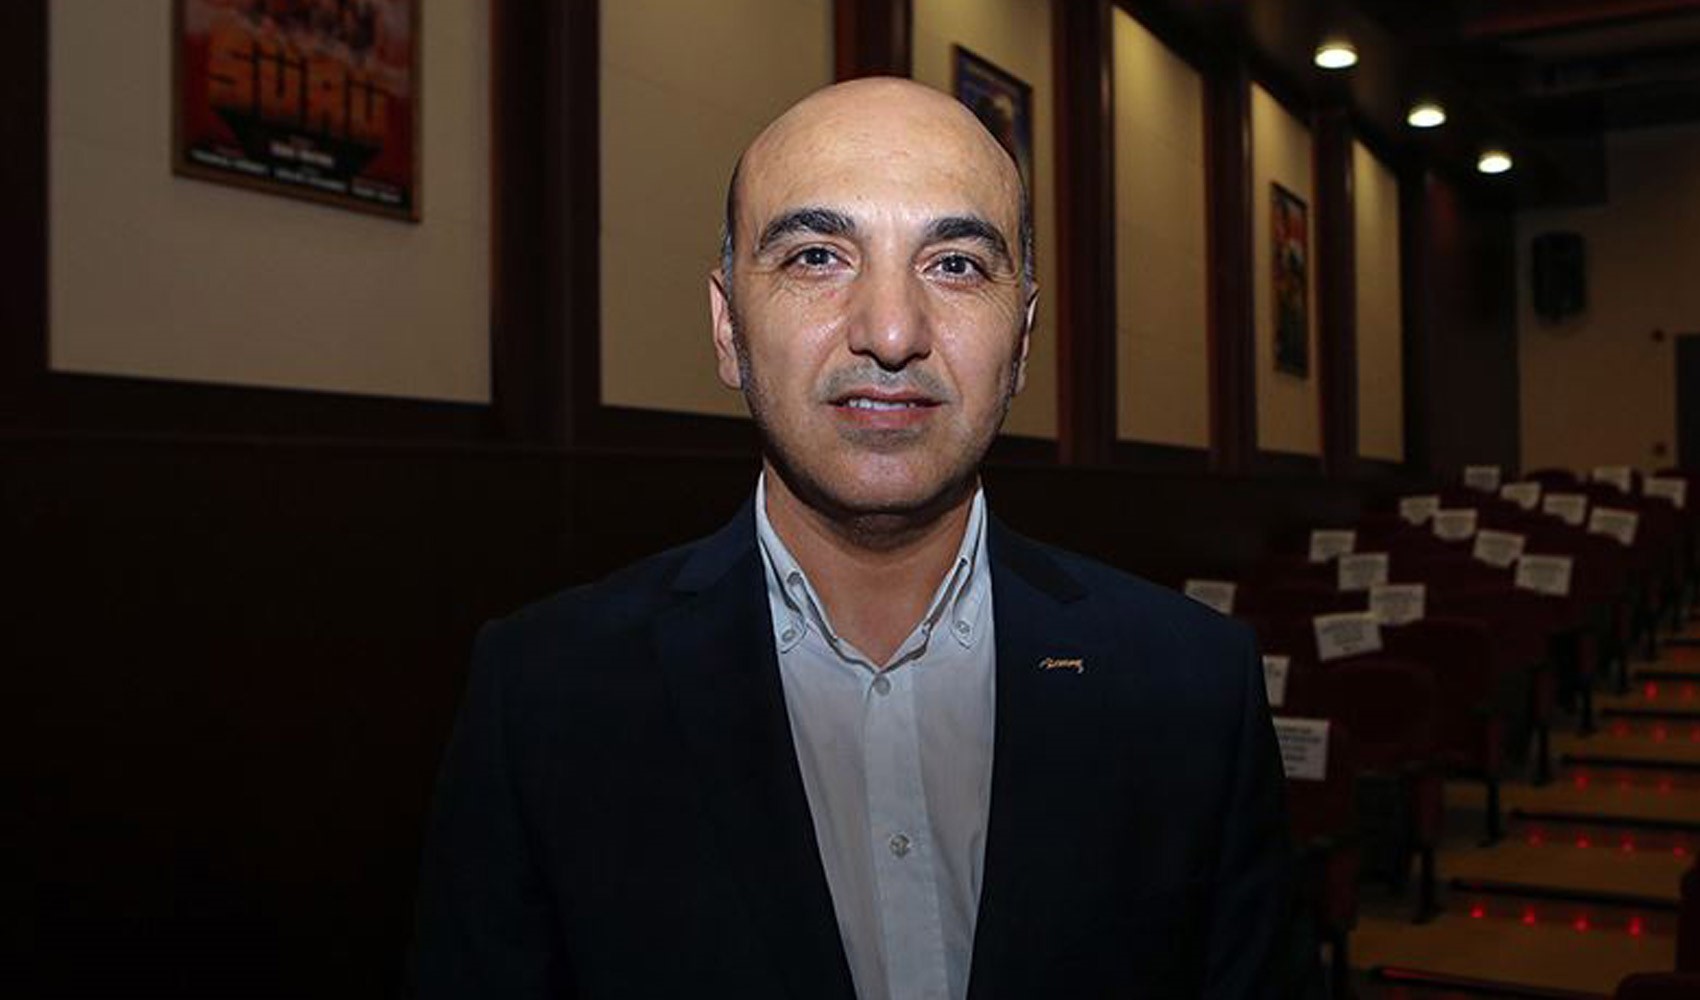 CHP Bakırköy Belediye Başkanı Kerimoğlu'ndan Köksal açıklaması. 'Kabul edilemez'